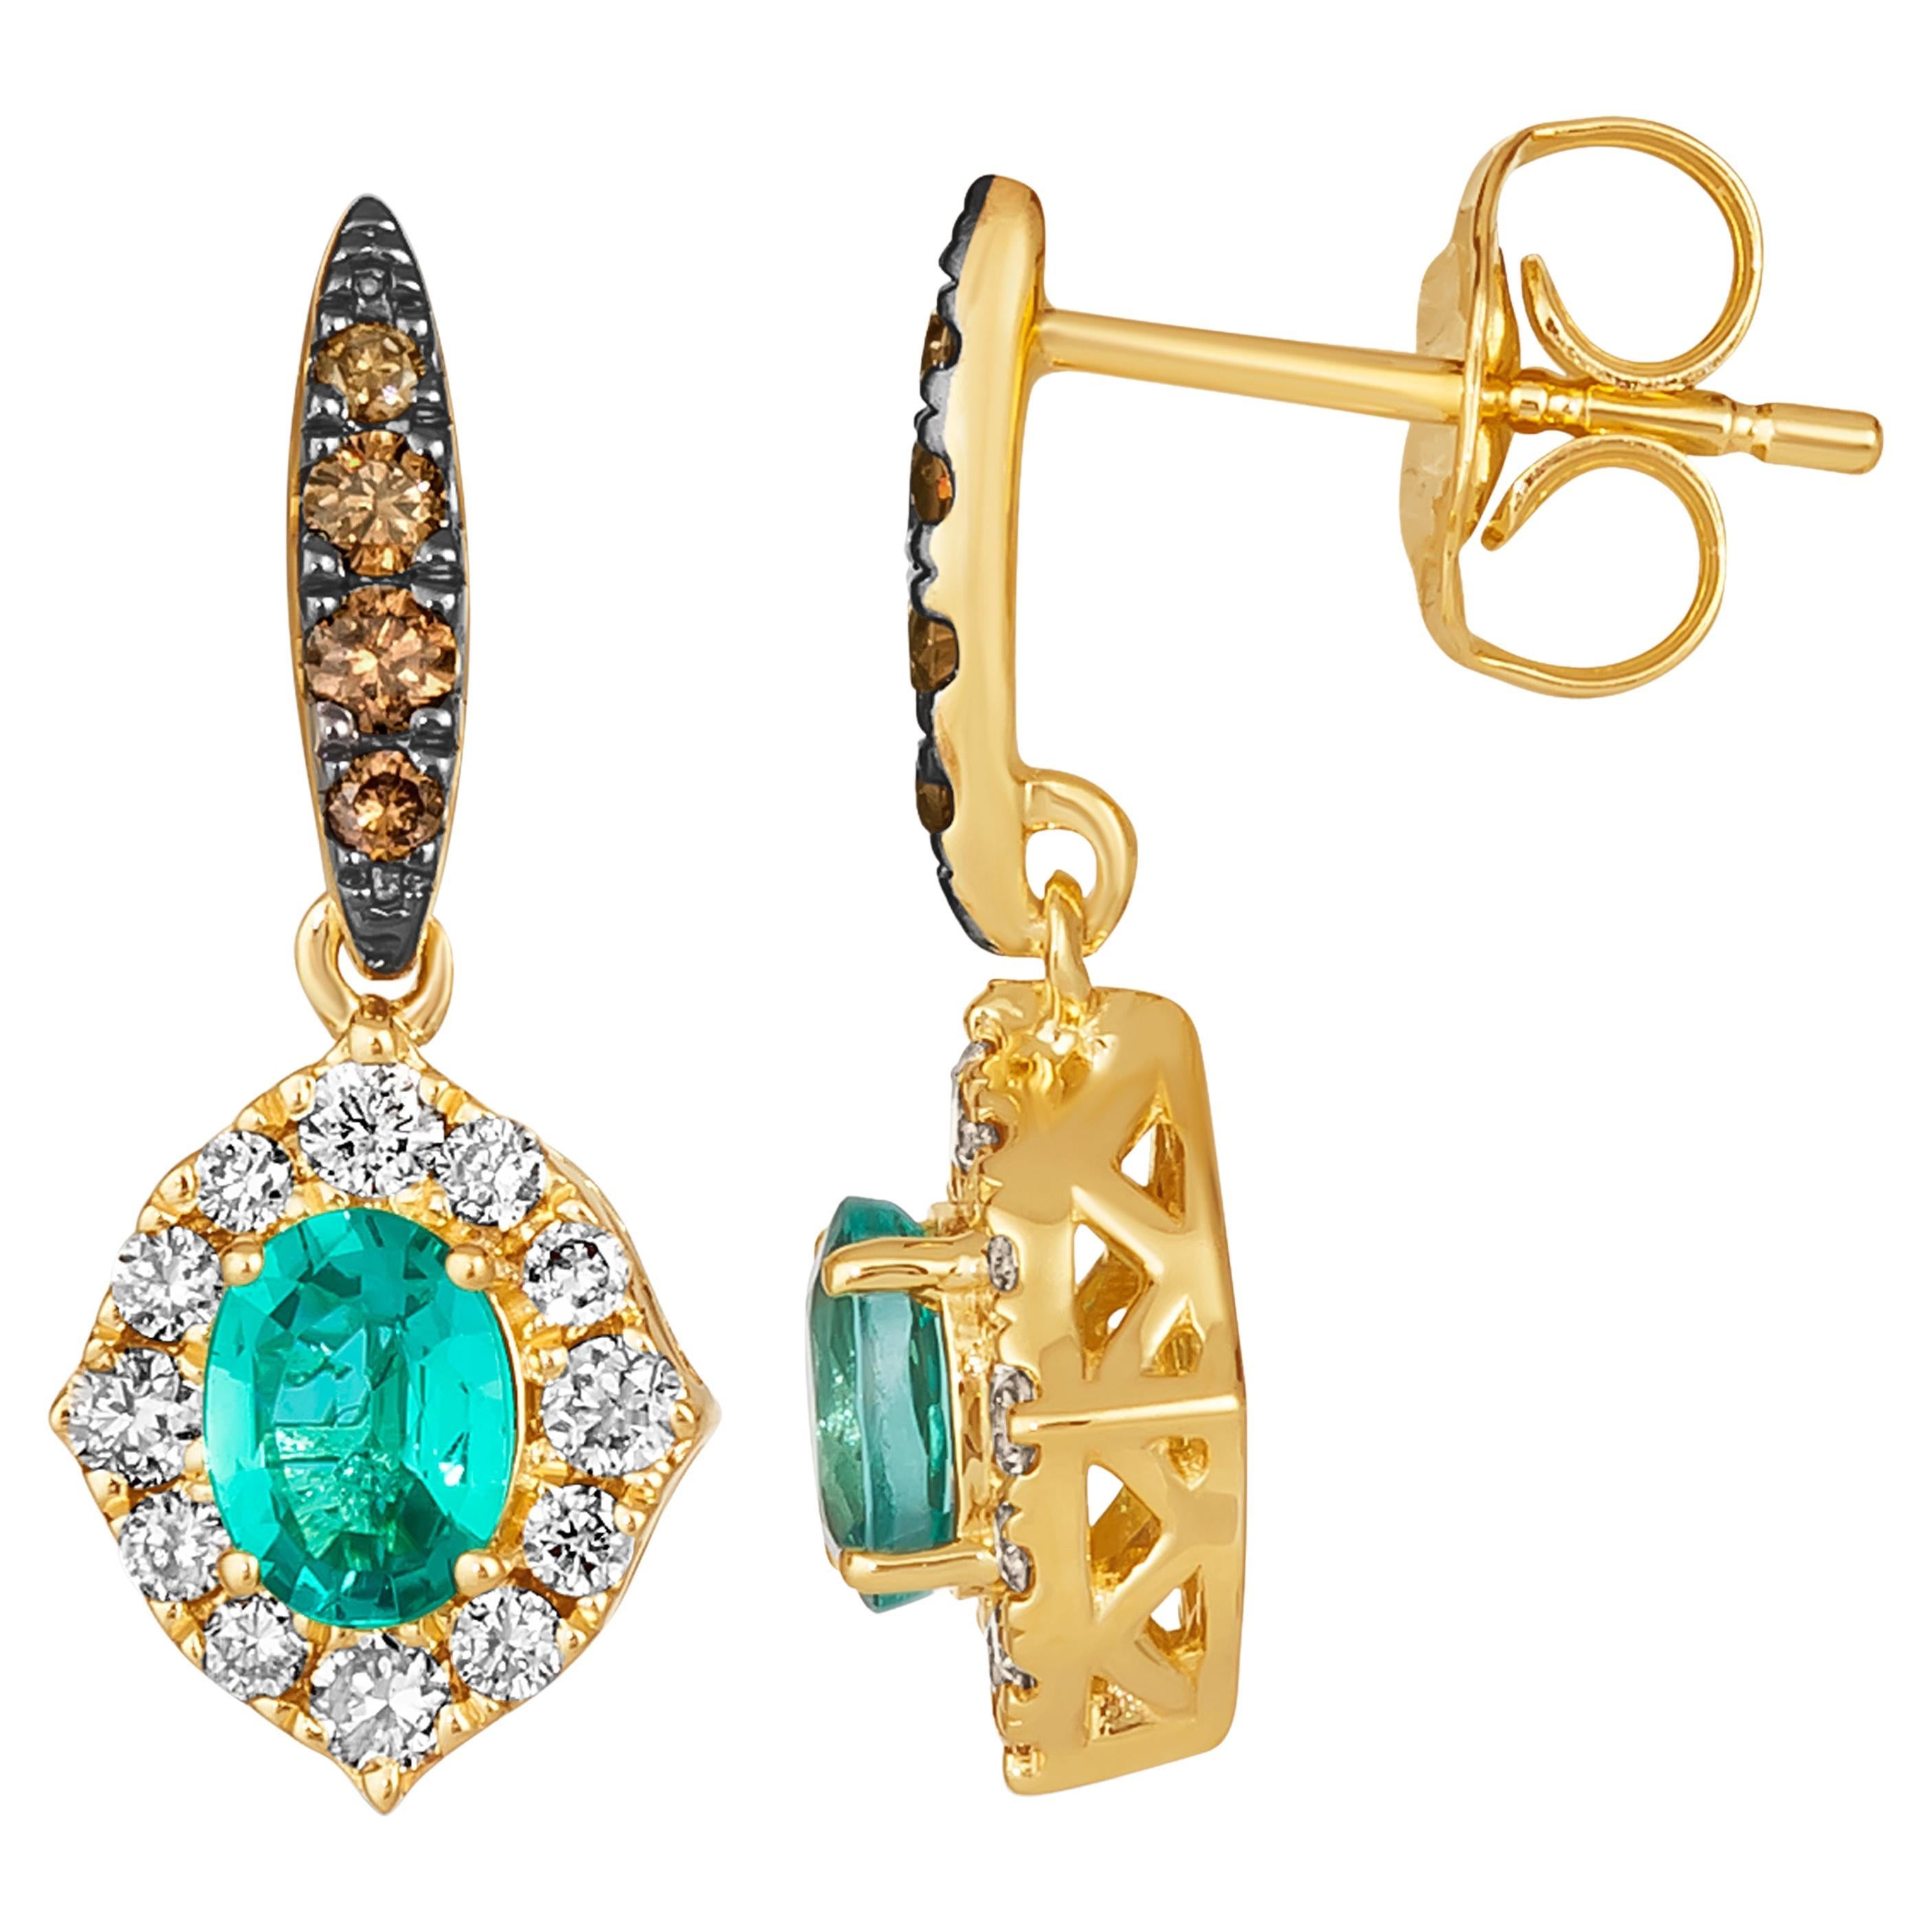 Le Vian Earrings featuring Costa Smeralda Emeralds Chocolate Diamonds, Nude